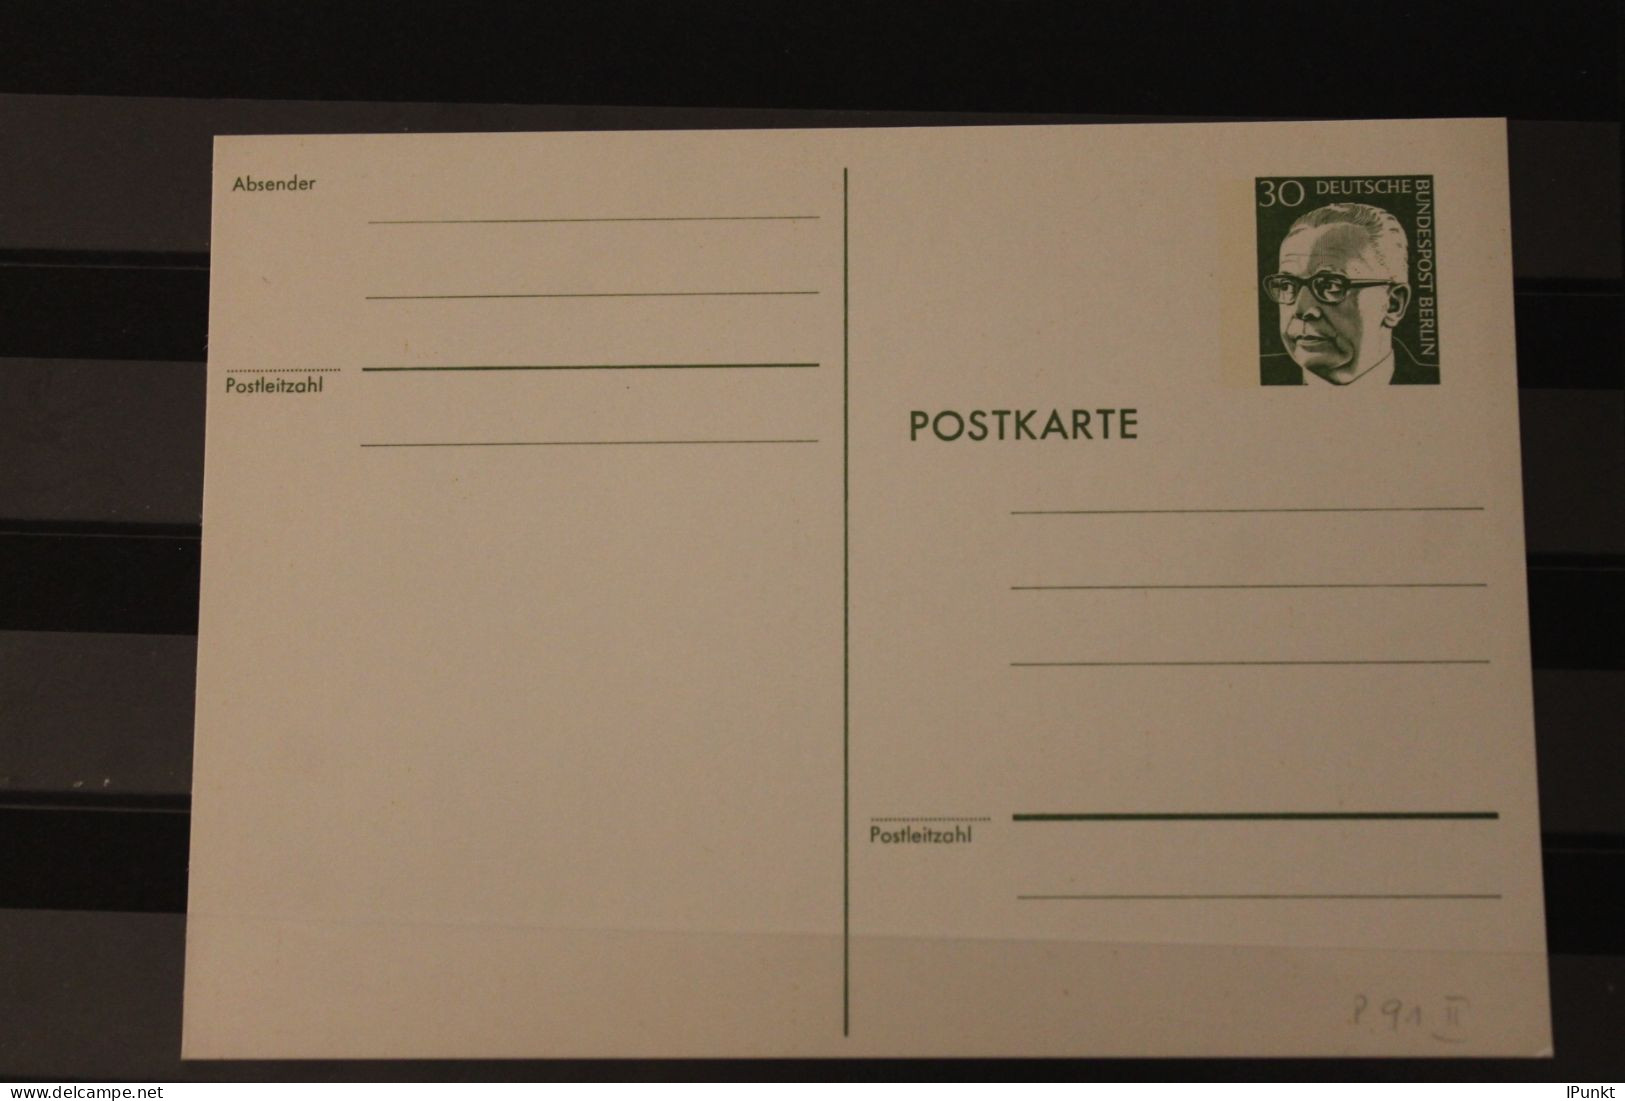 Berlin 1973; Ganzsache G. Heinemann Postkarte   P 91 II; Ungebraucht - Postcards - Mint